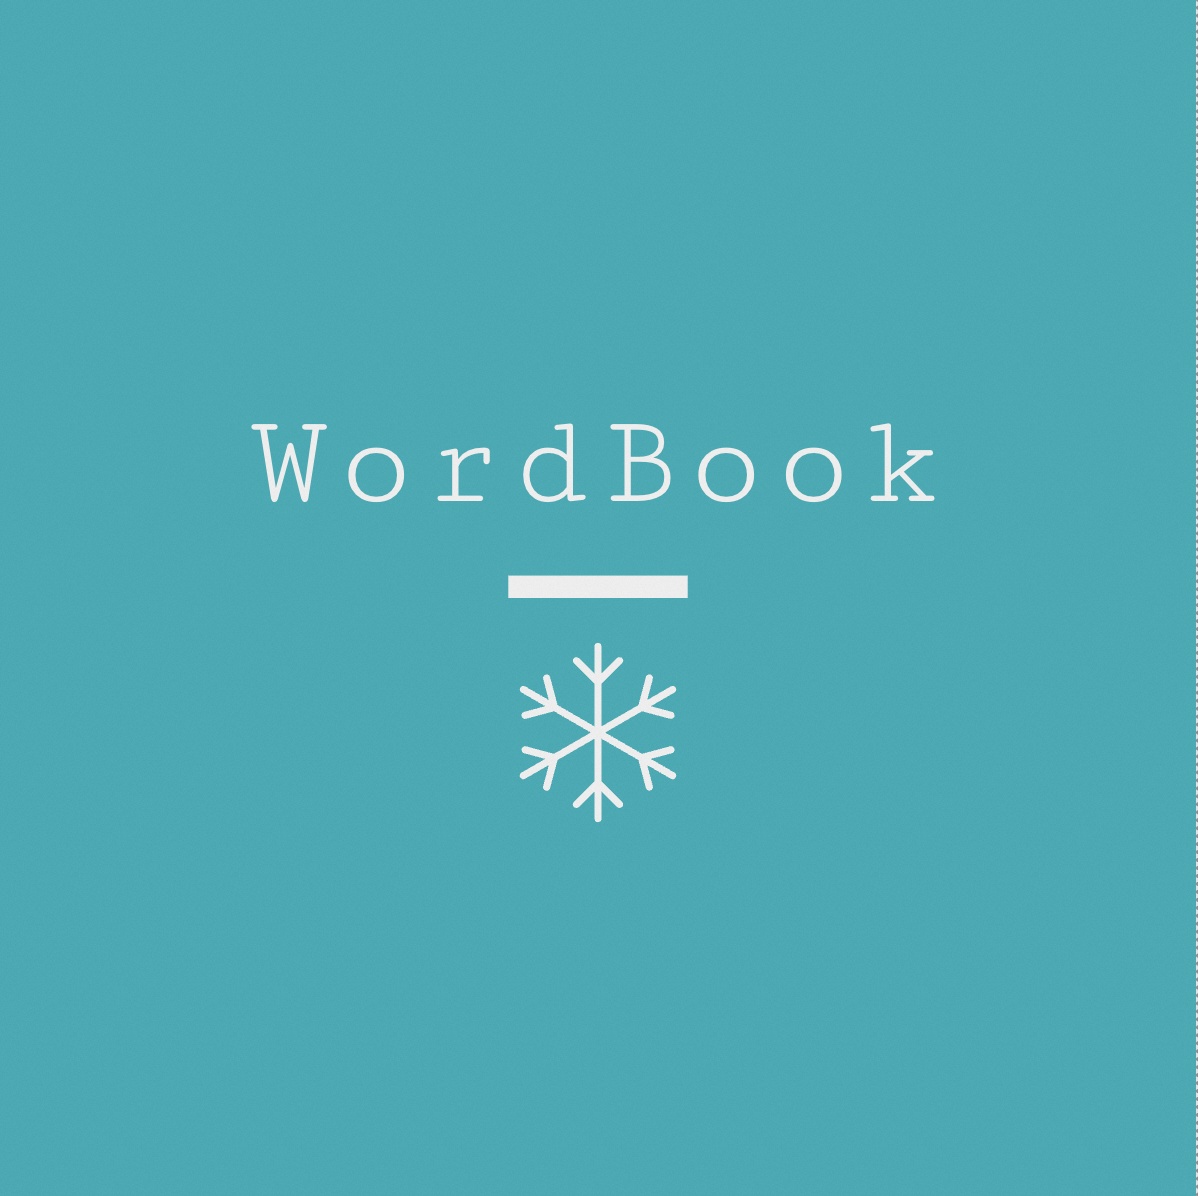 vscode word book